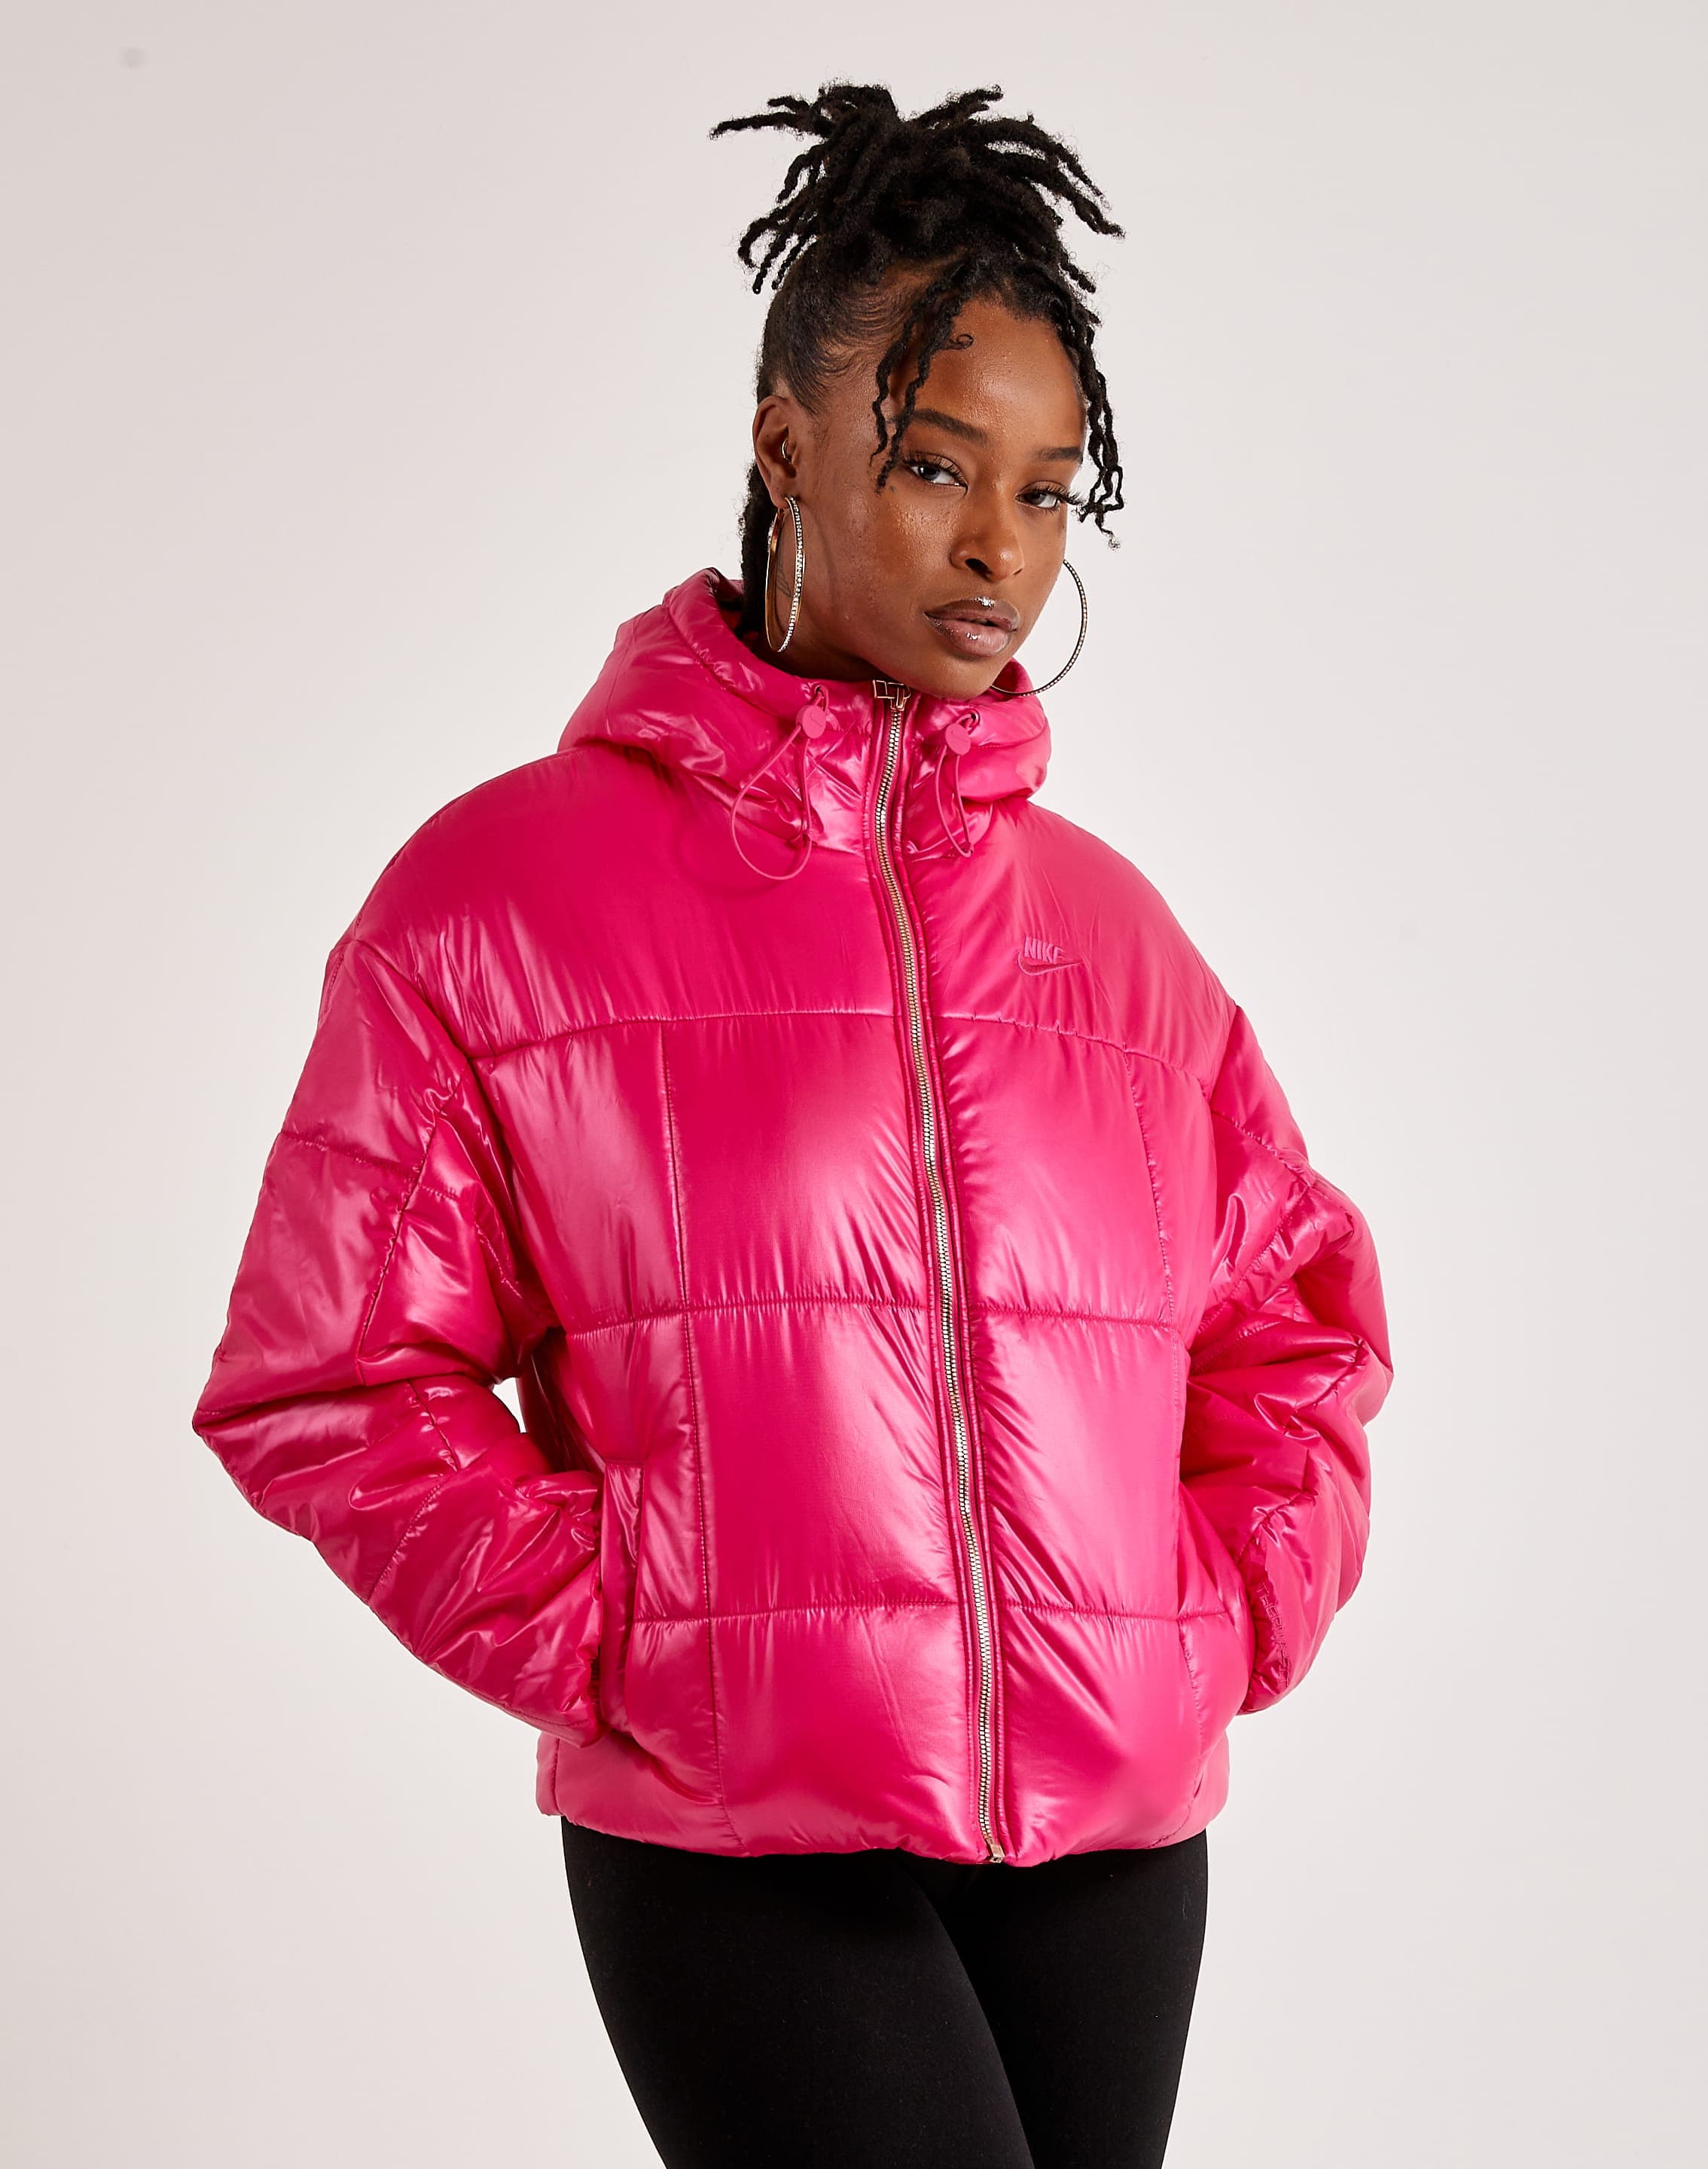 Women's Winter Wear Running Jackets. Nike CA